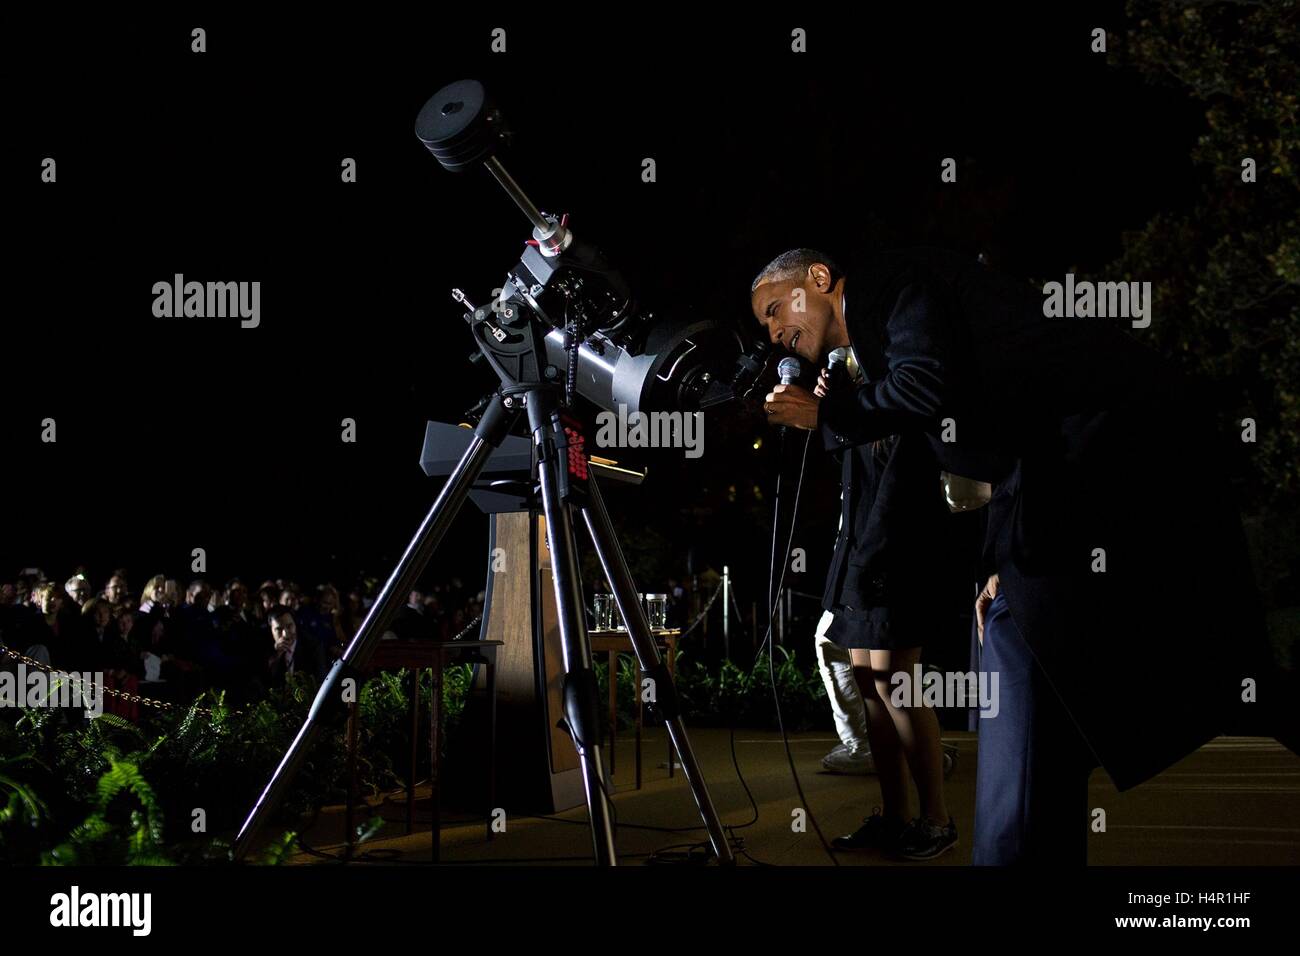 US-Präsident Barack Obama schaut der Mond durch ein Teleskop während im Gespräch mit Studenten Sofy Alvarez Siedlungshügel im Weißen Haus Astronomie Nacht auf dem South Lawn des weißen Hauses 19. Oktober 2015 in Washington, DC. Stockfoto